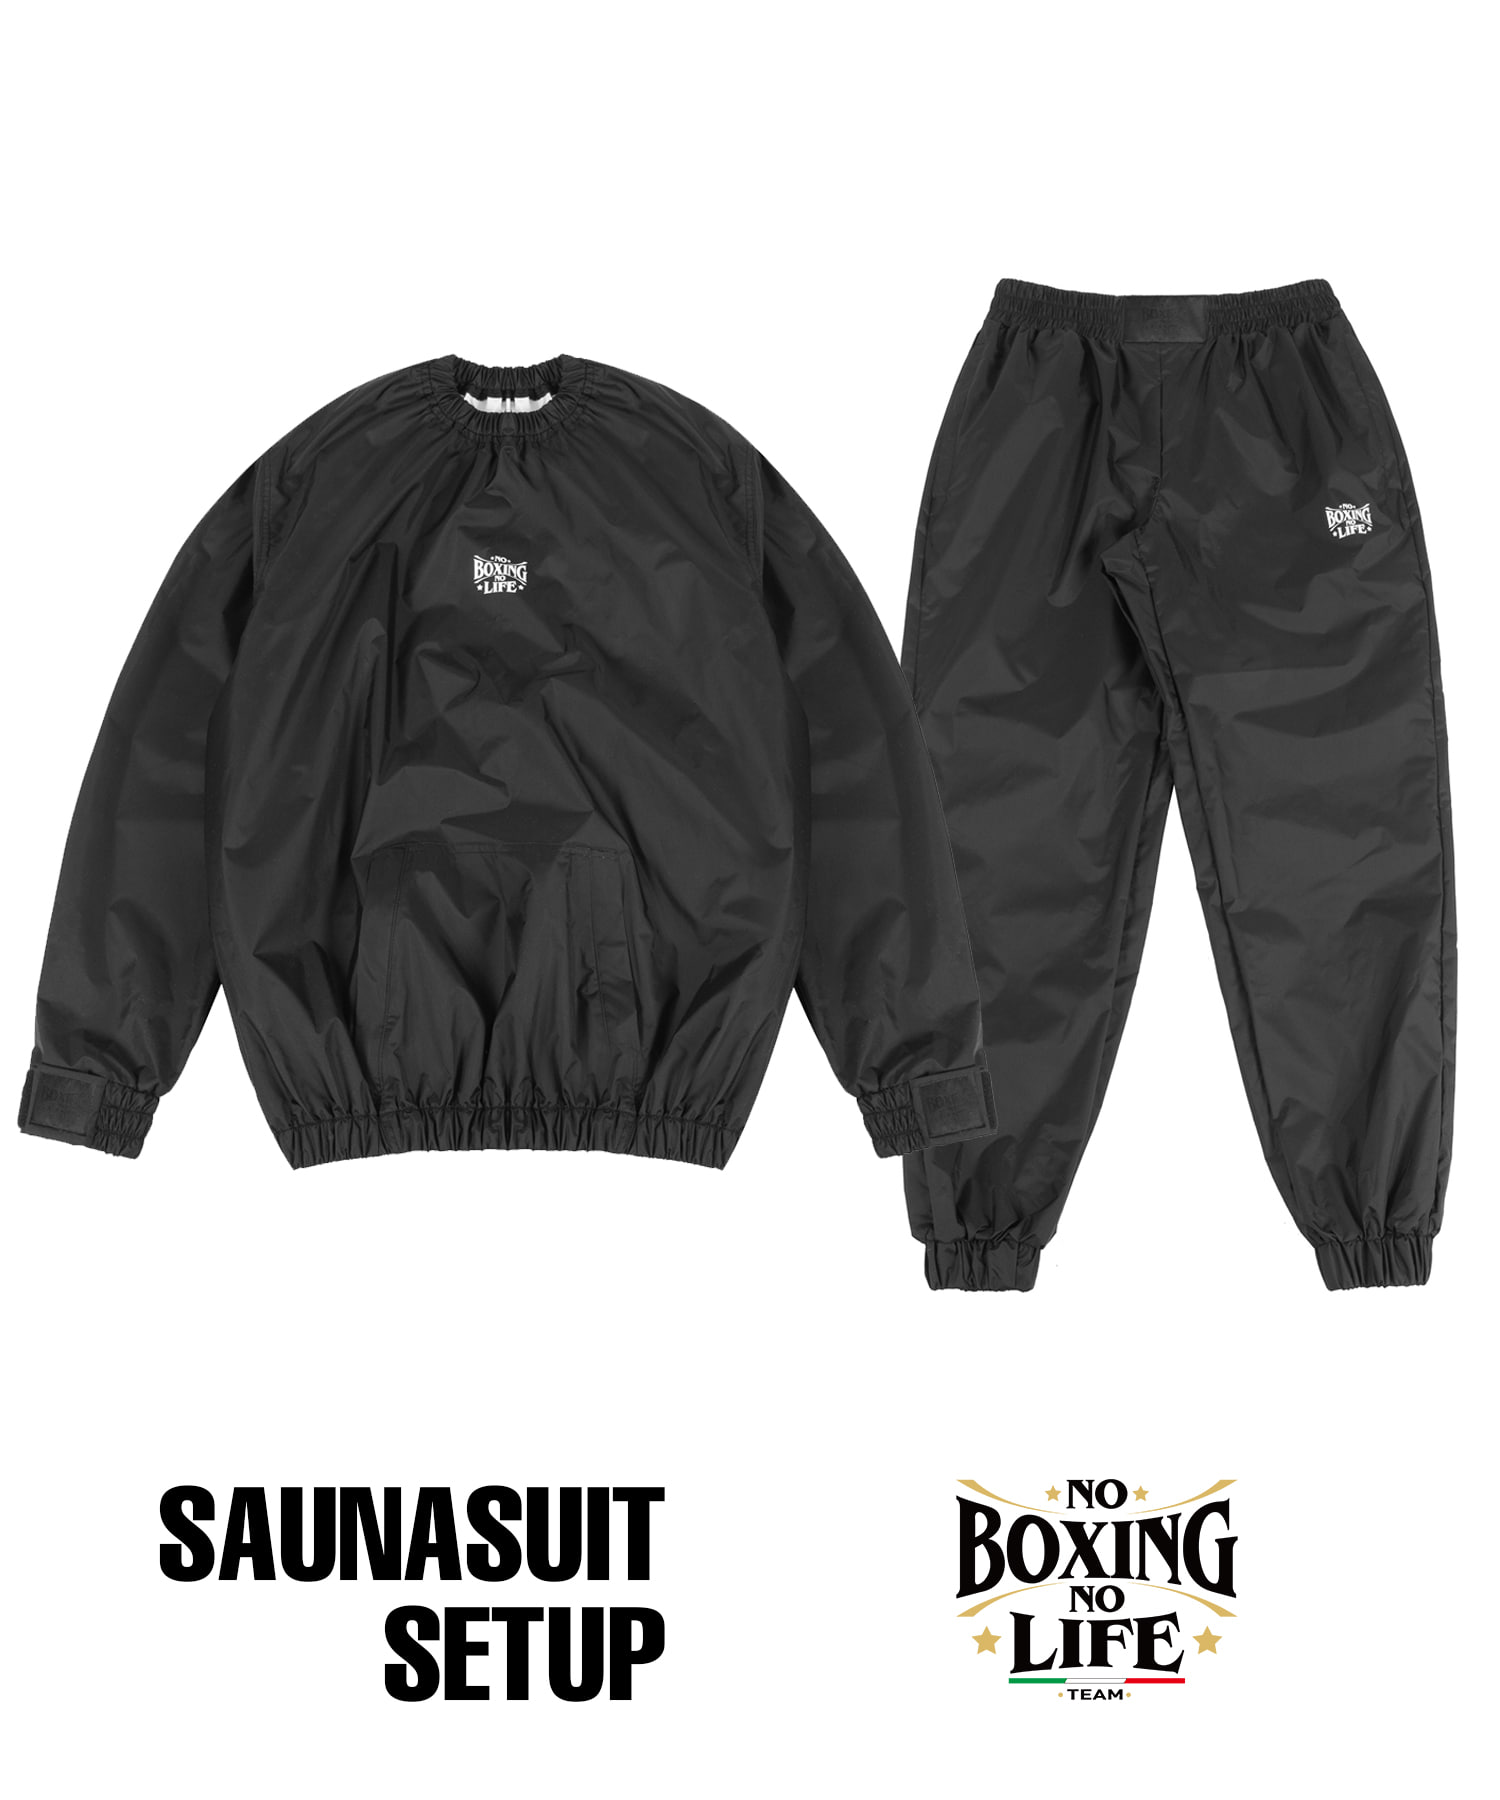 NBNLSET Small Logo Sauna Suit Setup - Black